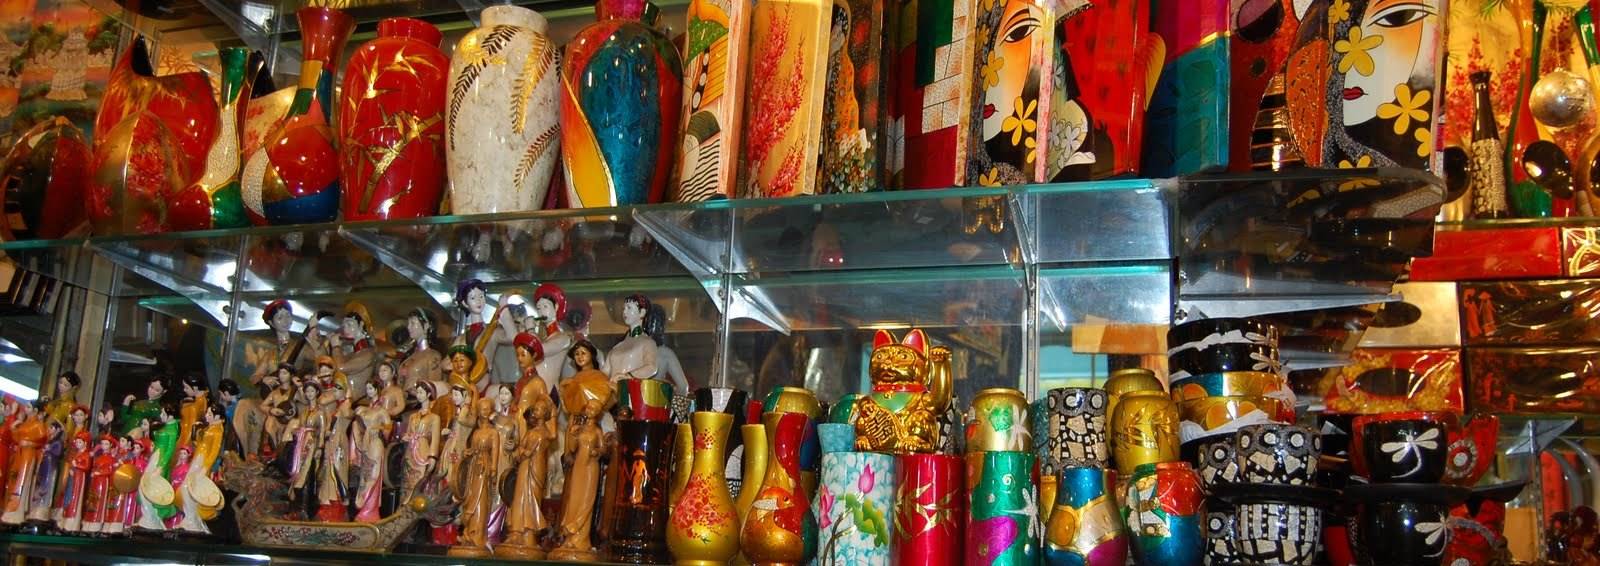 Что привезти из нячанга (вьетнам): фрукты, кофе, лекарства, сувениры | блог о приключениях ксюши и славы наймушиных